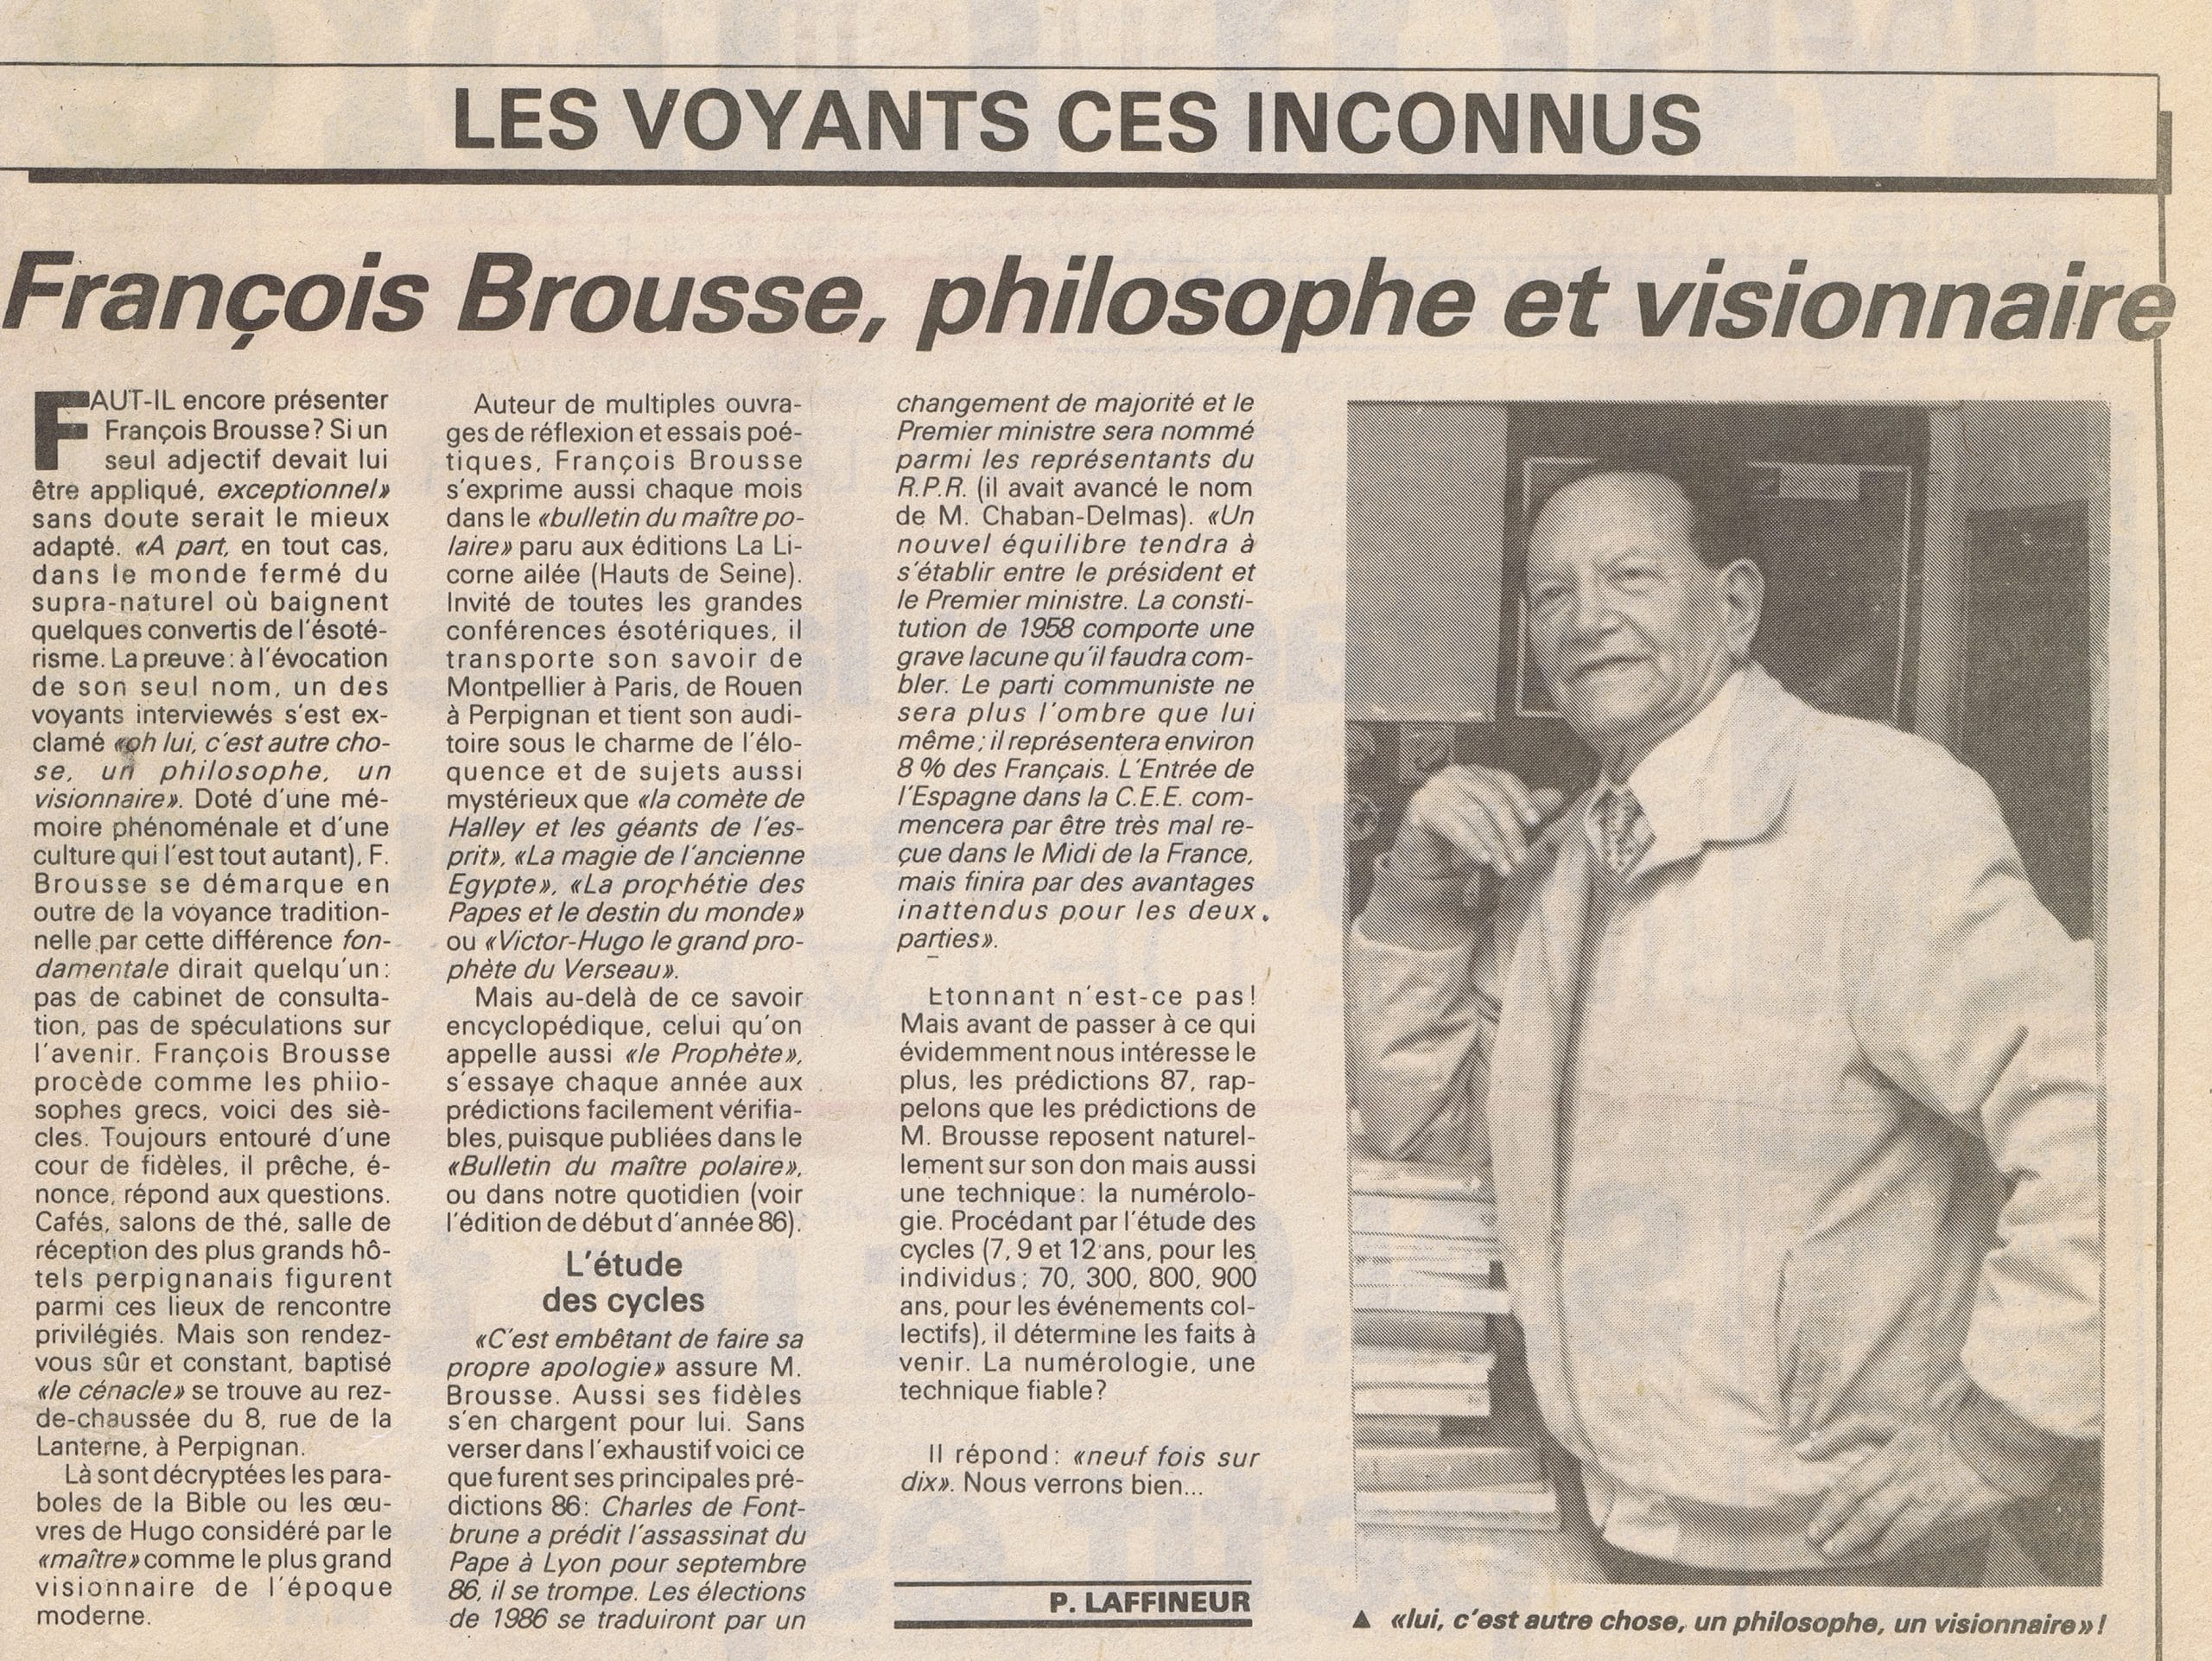 François Brousse philosophe et visionnaire – 25 décembre 1986